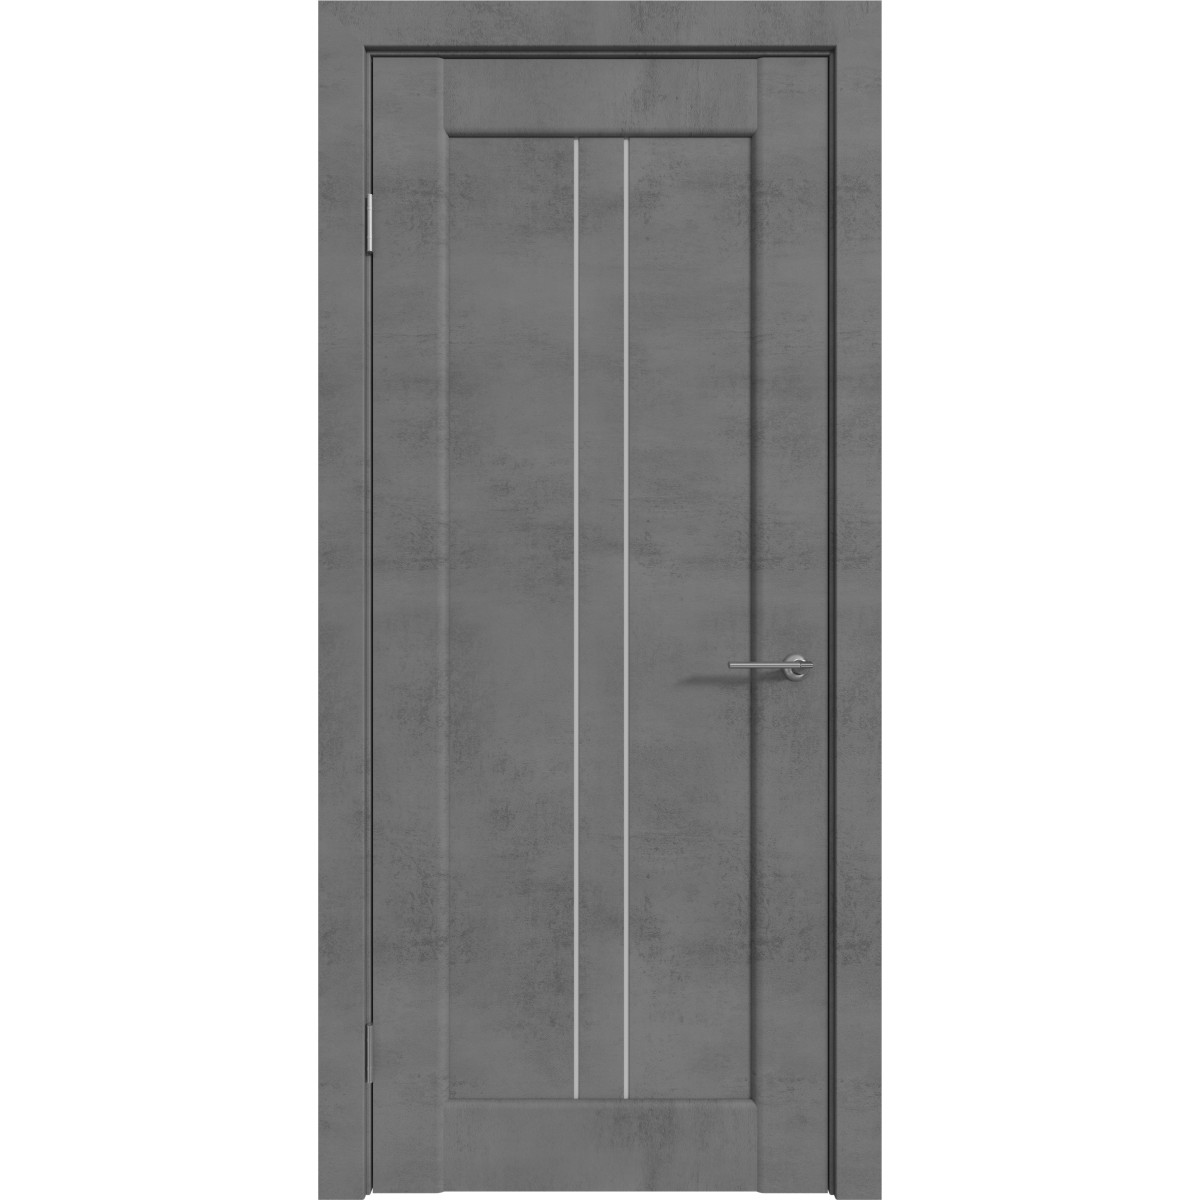 Дверь межкомнатная остекленная с замком и петлями в комплекте Сиэтл 90x200 см ПВХ цвет лофт темный